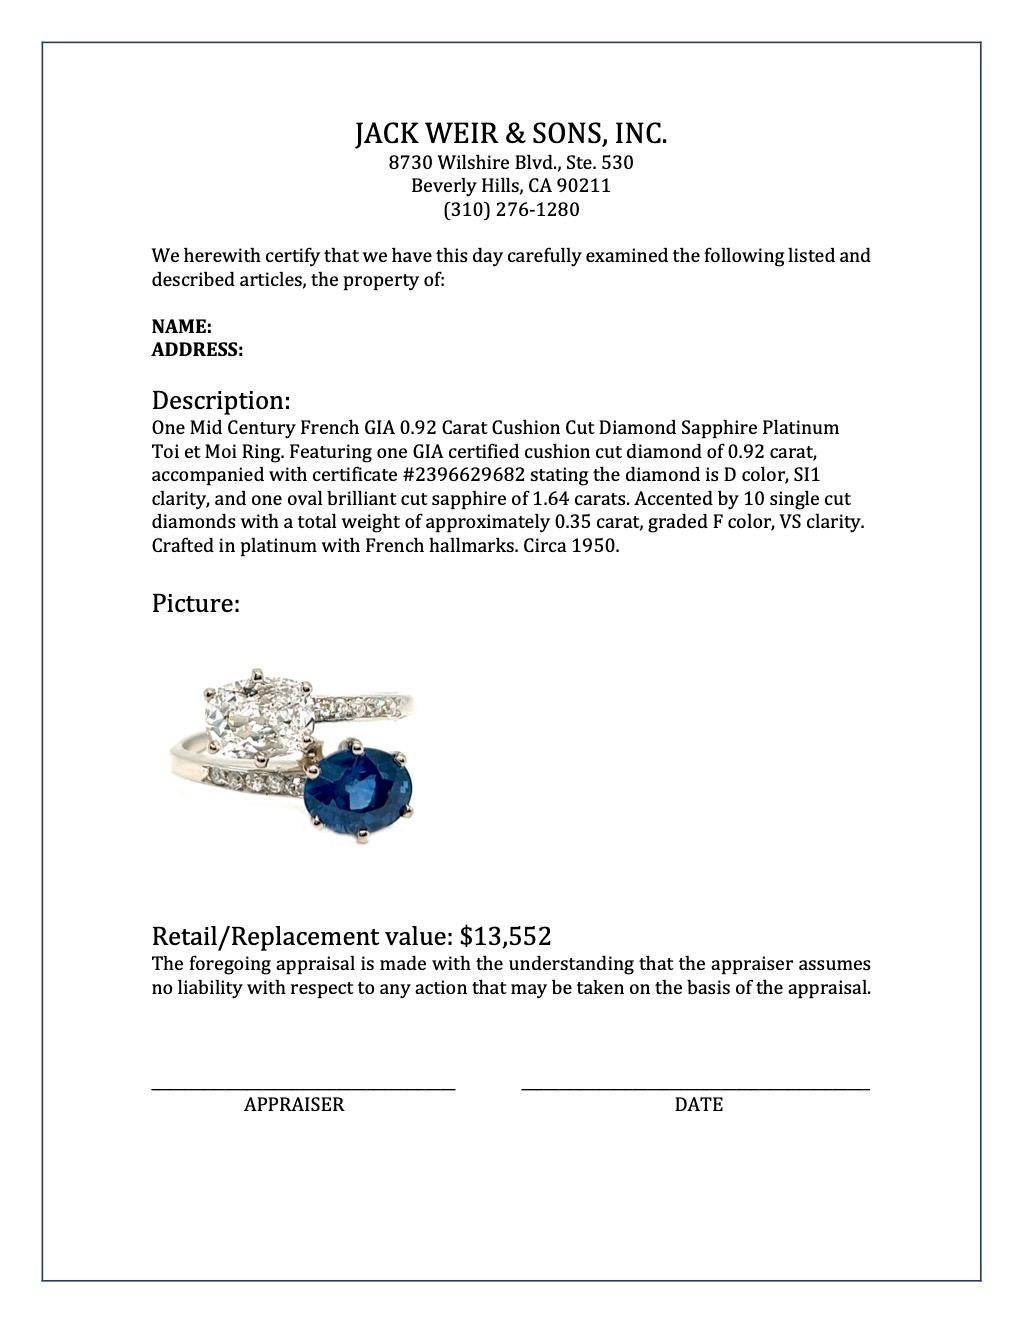 Mid Century French GIA 0.92 Carat Diamond Sapphire Platinum Toi Et Moi Ring 2